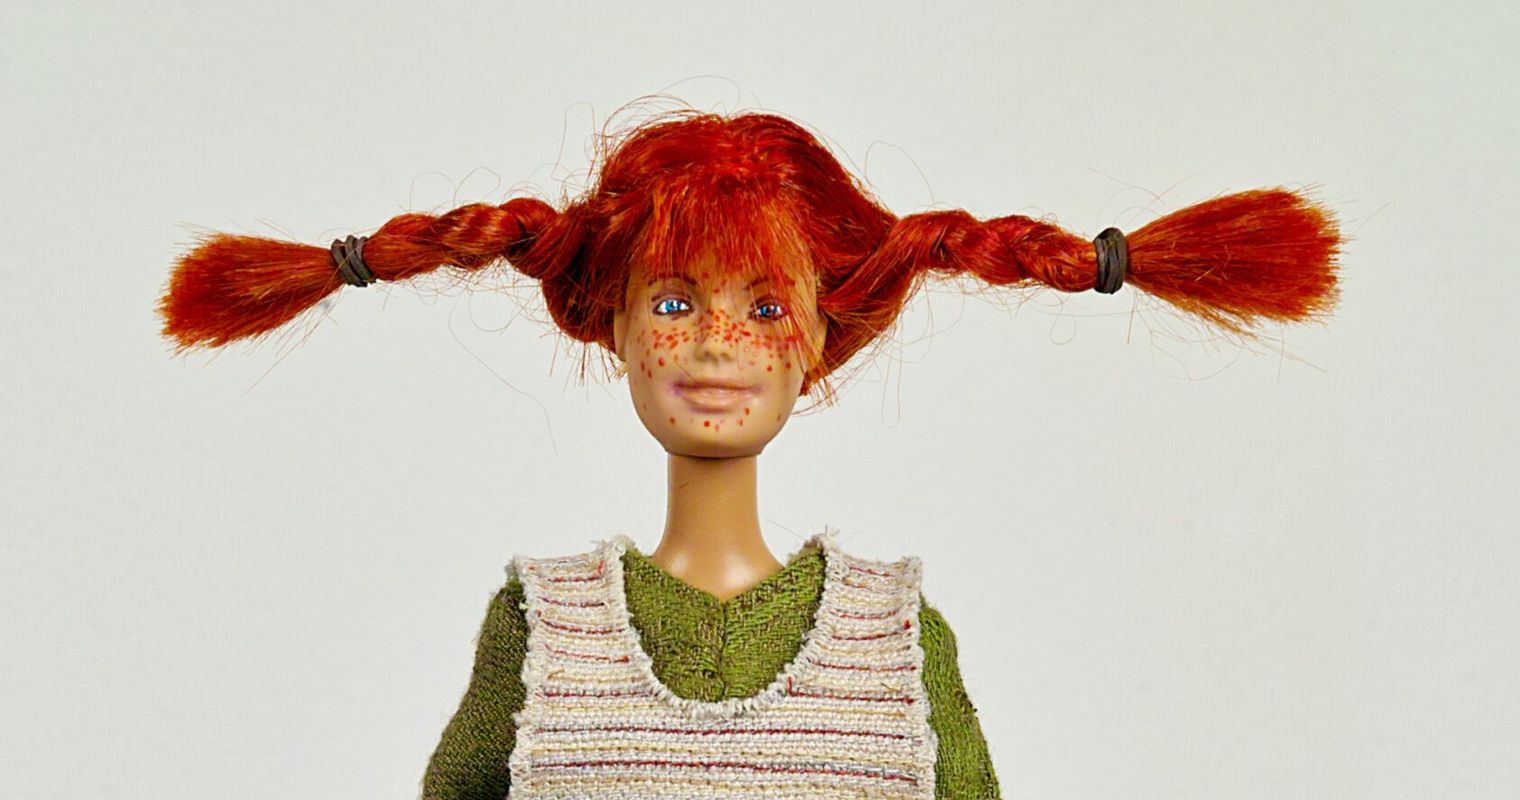 Darum gehört der Stadt Luzern eine kuriose Barbie-Puppe